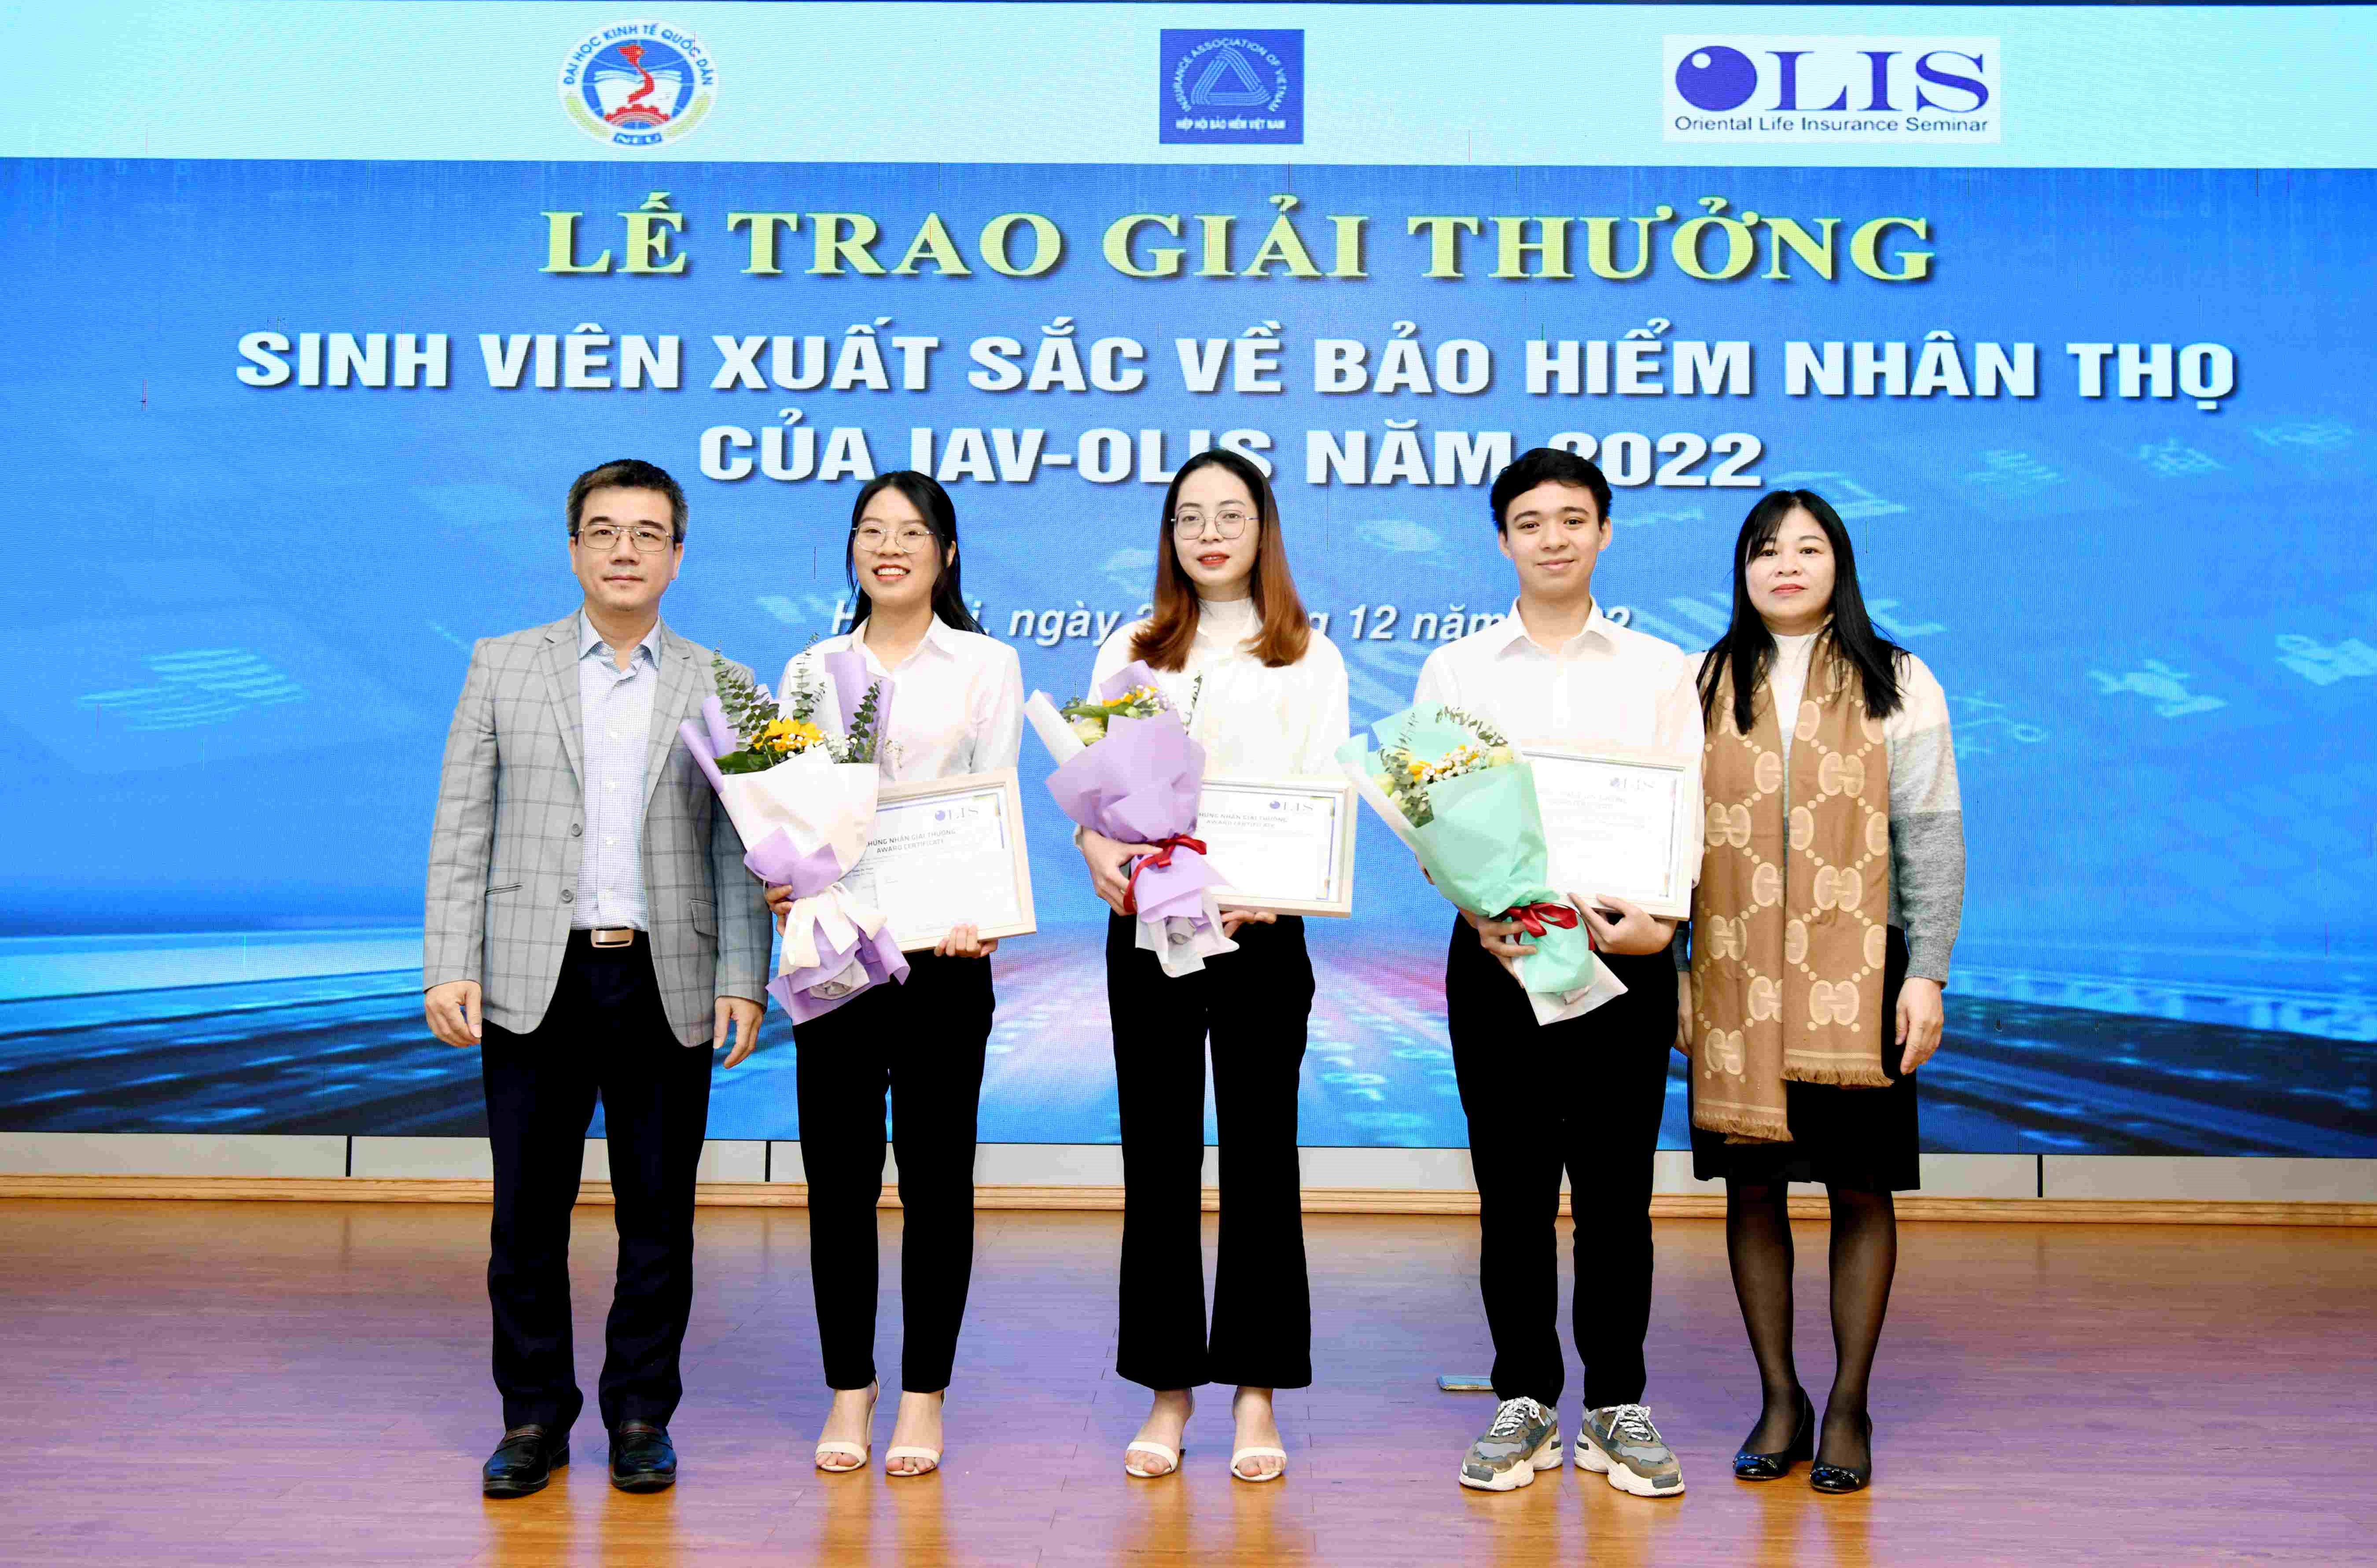 Trao Giải thưởng giành cho sinh viên xuất sắc về bảo hiểm nhân thọ năm 2022 (IAV-OLIS Award for Excellent Students in Life insurance 2022)